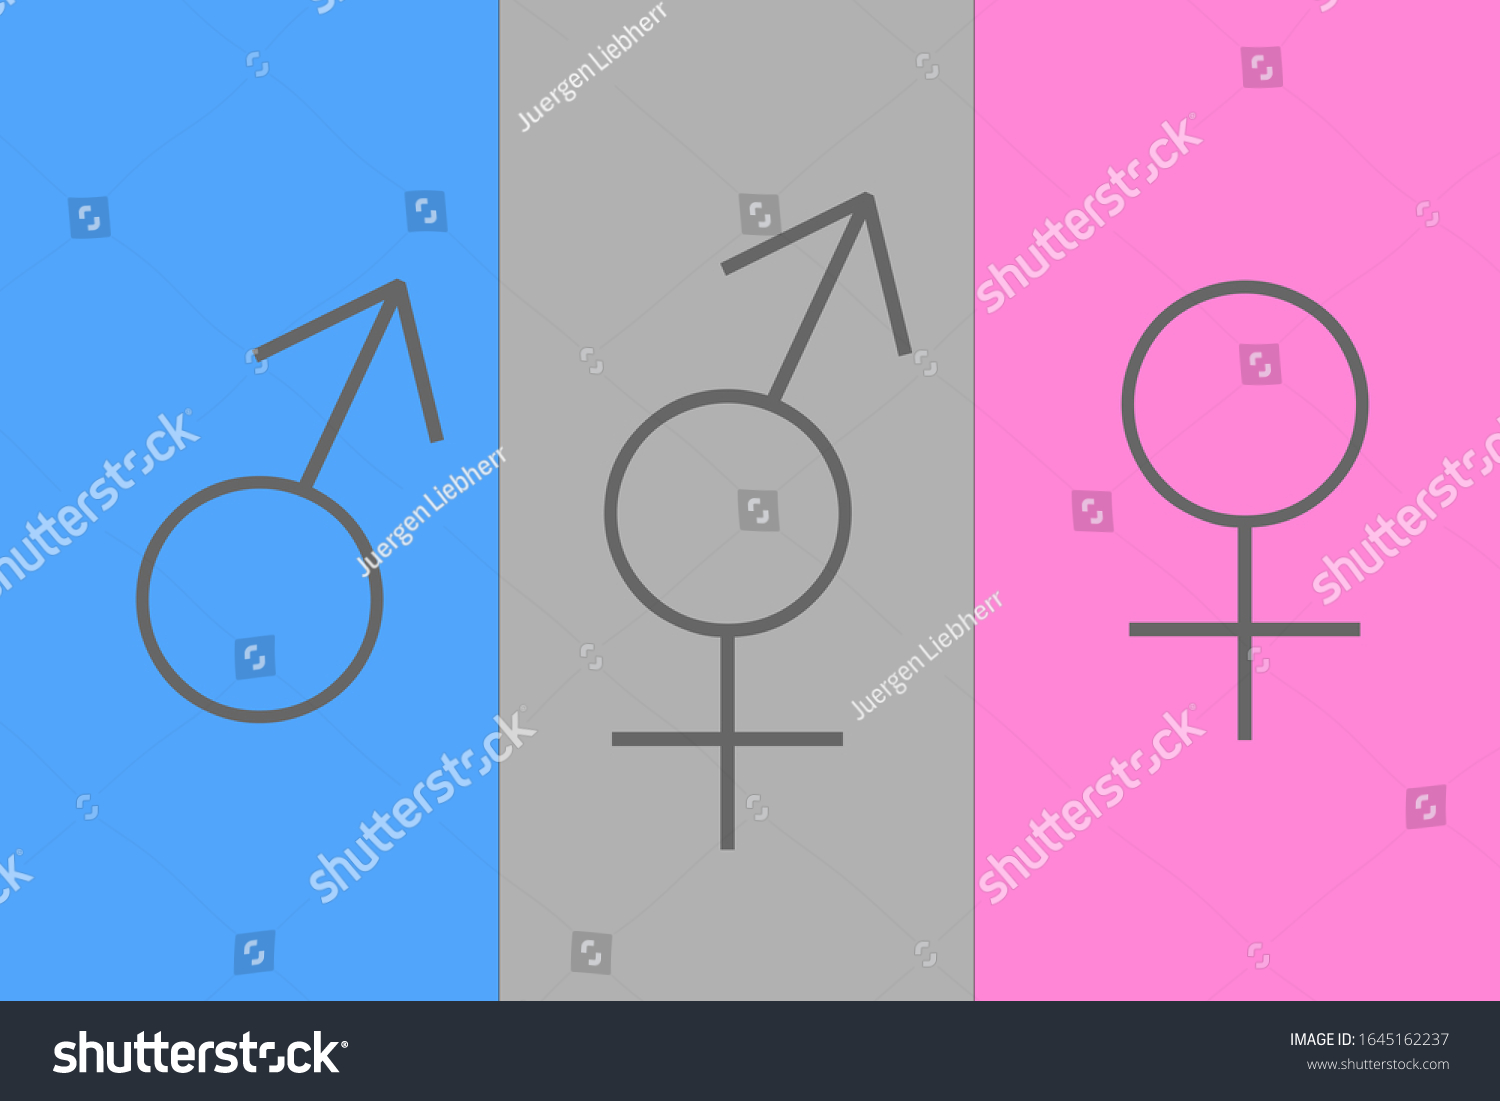 Gender Equity Male Female Hermaphrodite Sign Stock Illustration 1645162237 Shutterstock 7538